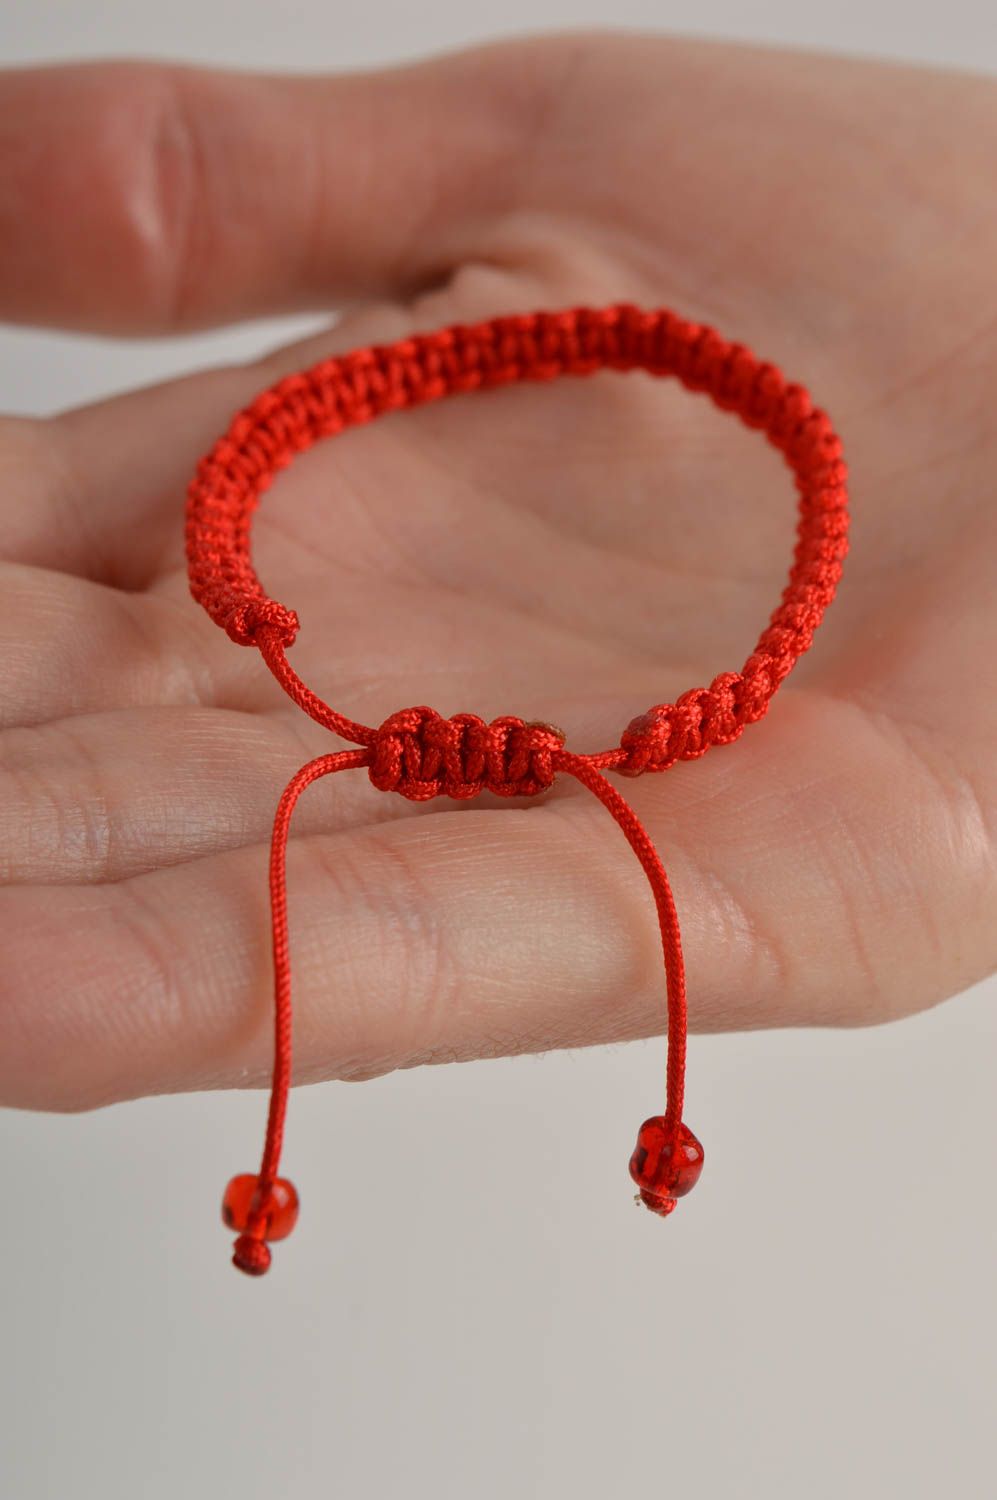 Wrist bracelet handmade children bracelet designer handmade present for girls photo 2